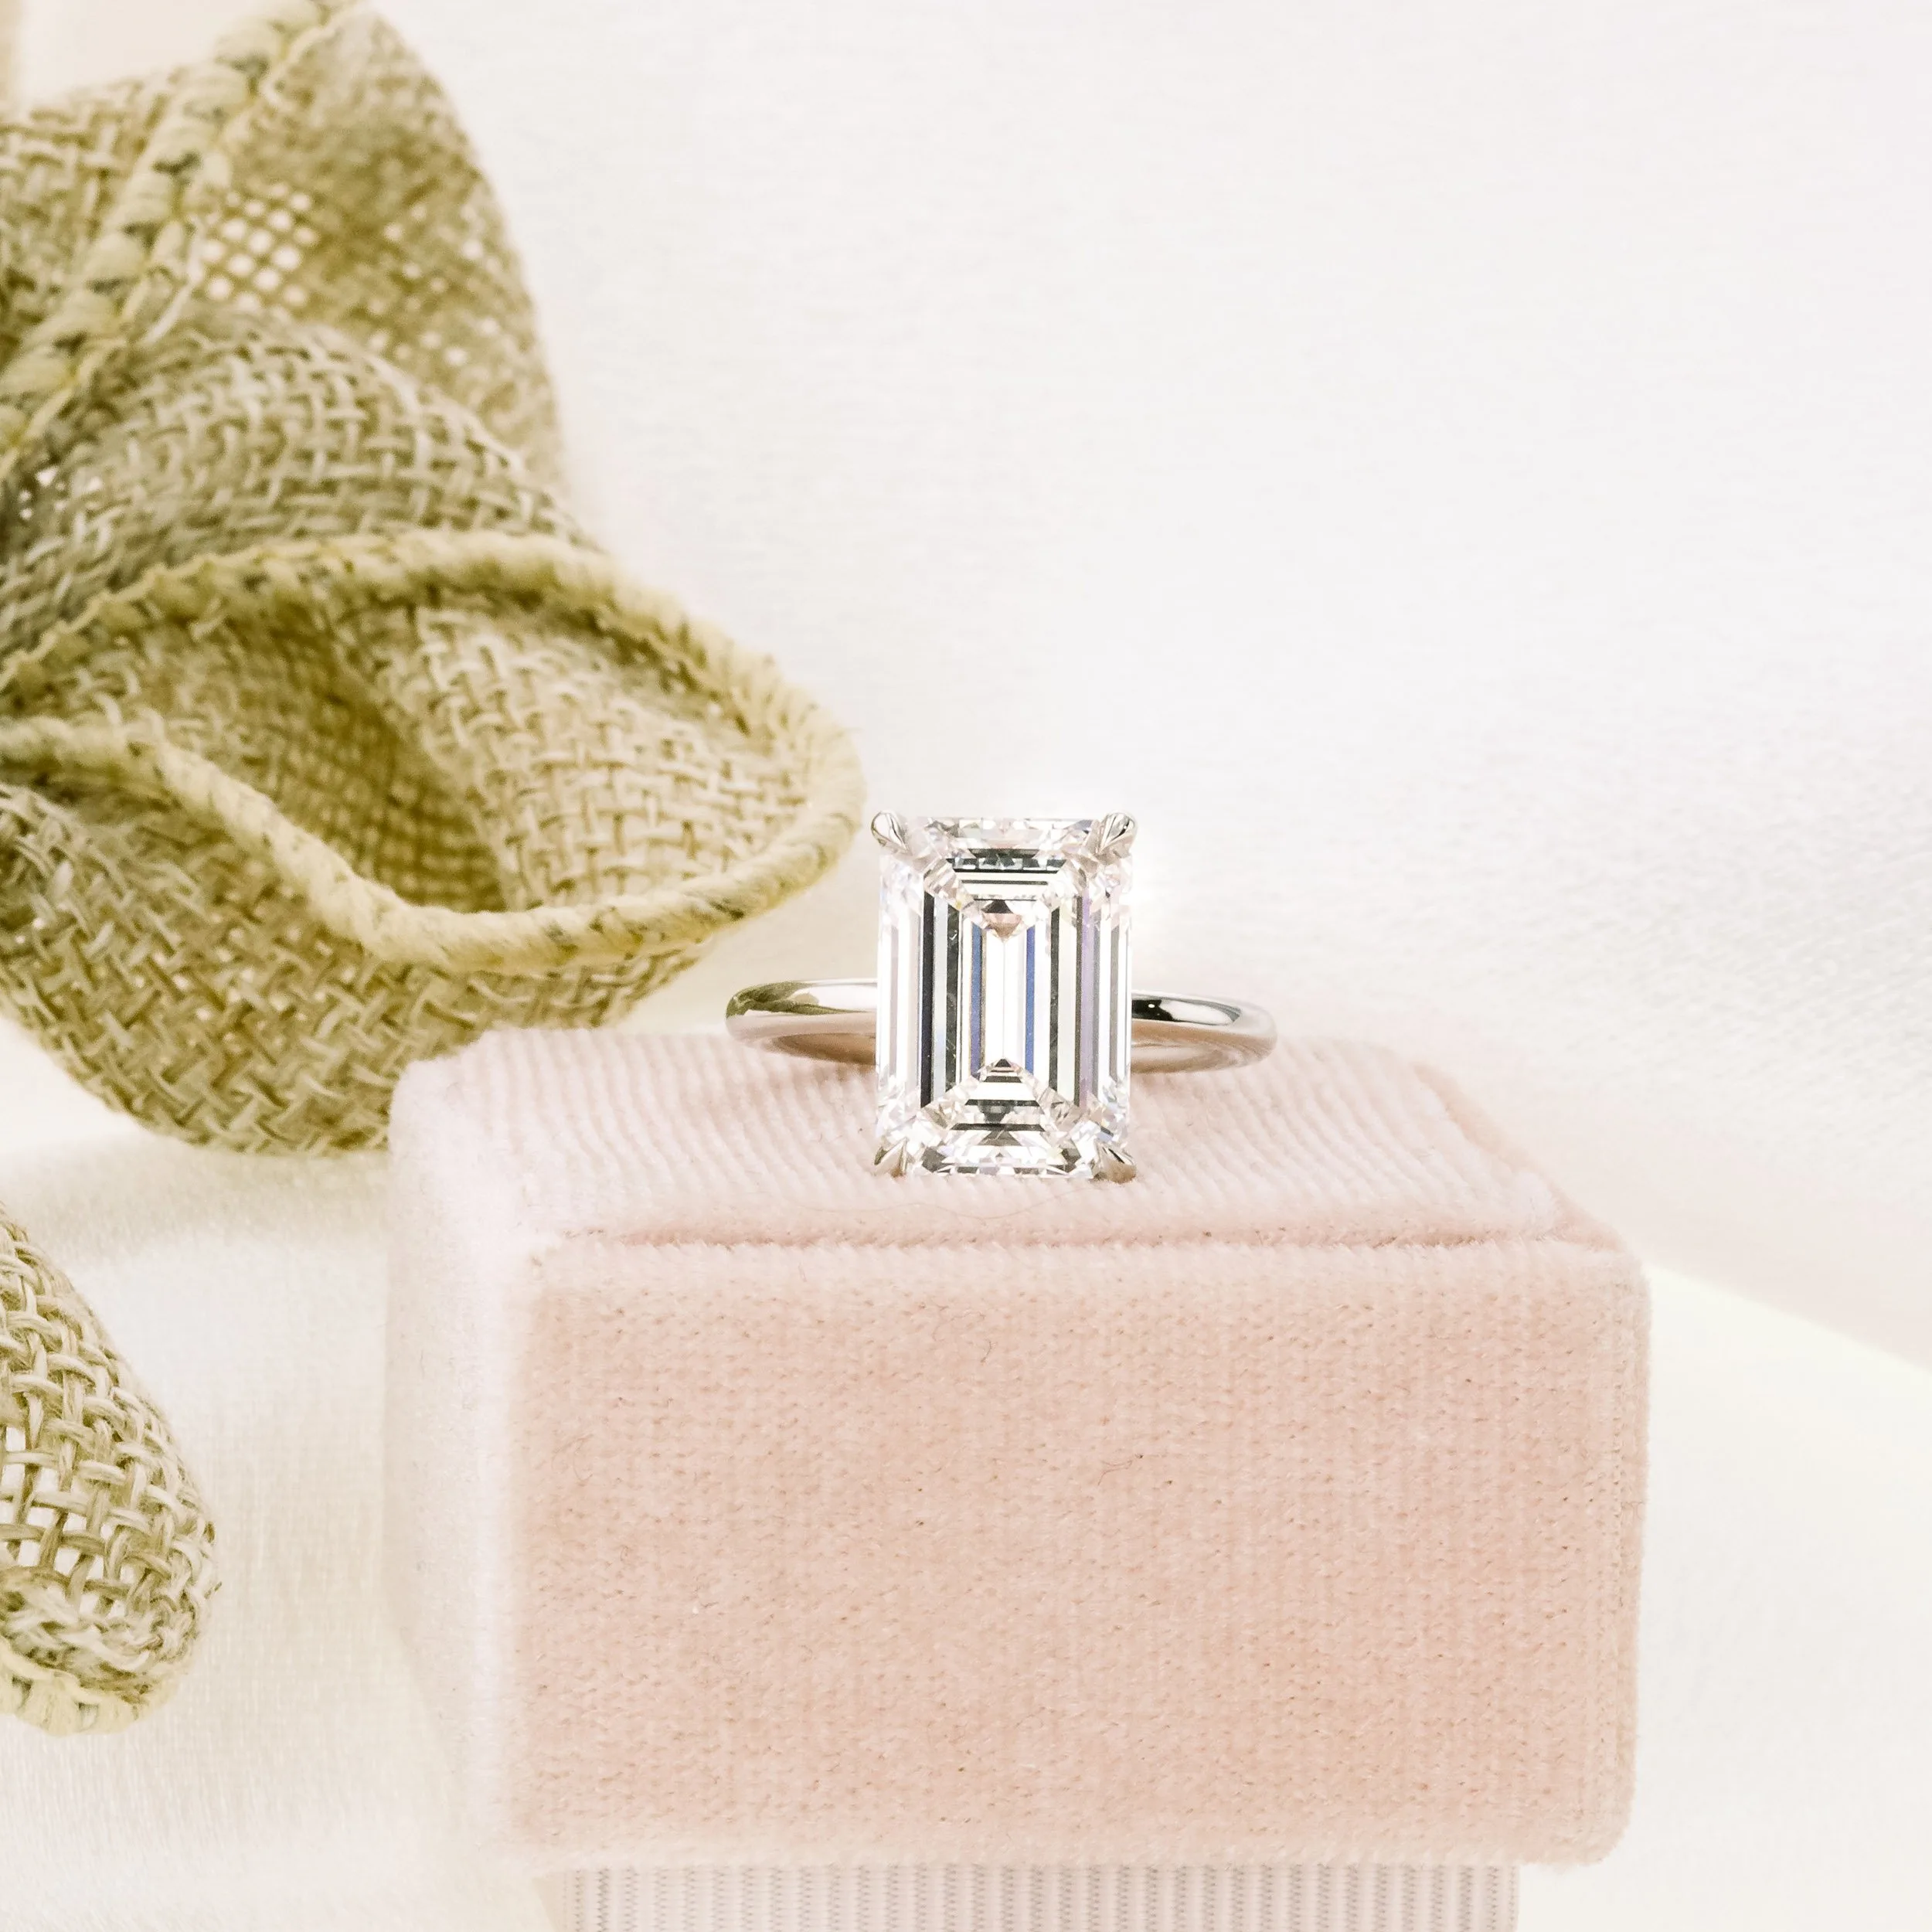 platinum 5 carat emerald cut lab diamond solitaire engagement ring ada diamonds design ad 235 macro